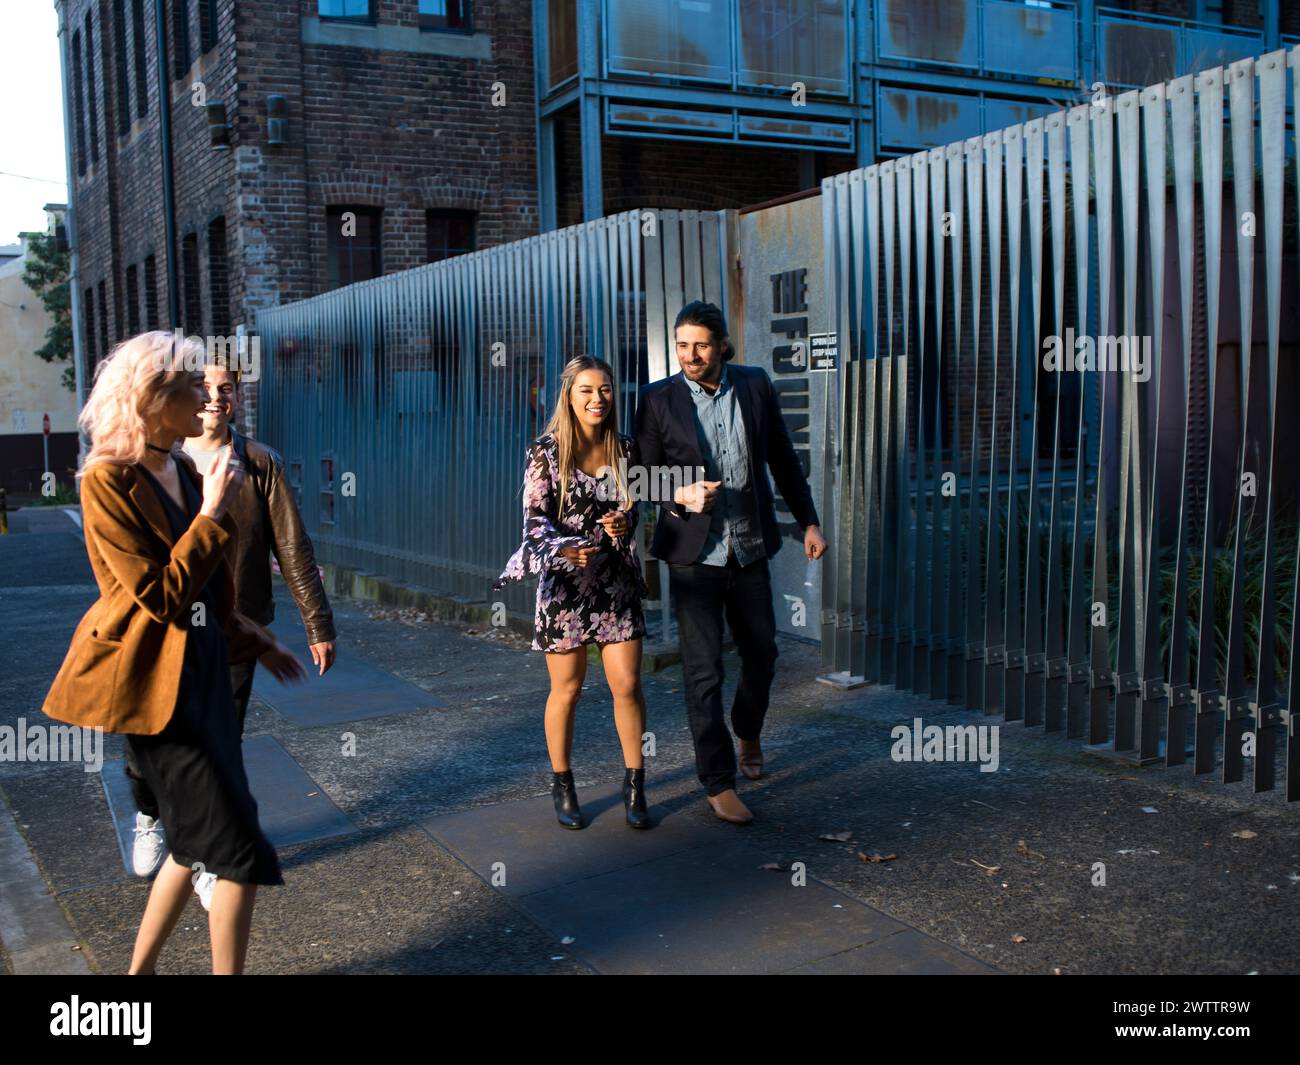 Drei Personen, die an einem Metallzaun in einer städtischen Umgebung vorbeilaufen Stockfoto